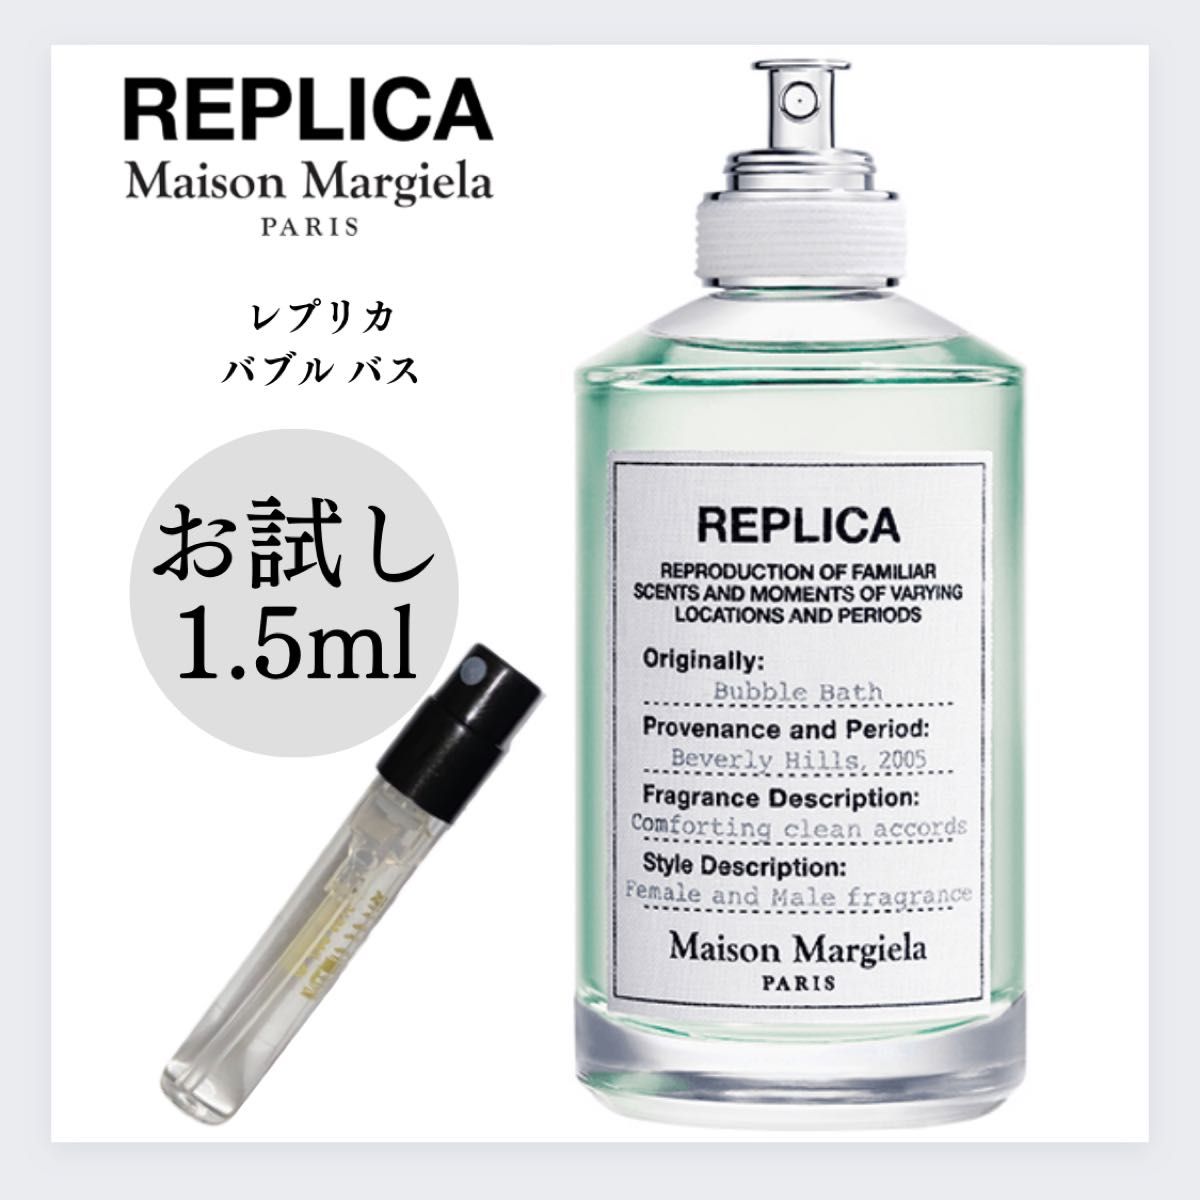 REPLICA レプリカ バブルバス 1.5ml お試し 新品 マルジェラ 香水 Margielaマルジェラ メゾンマルジェラ